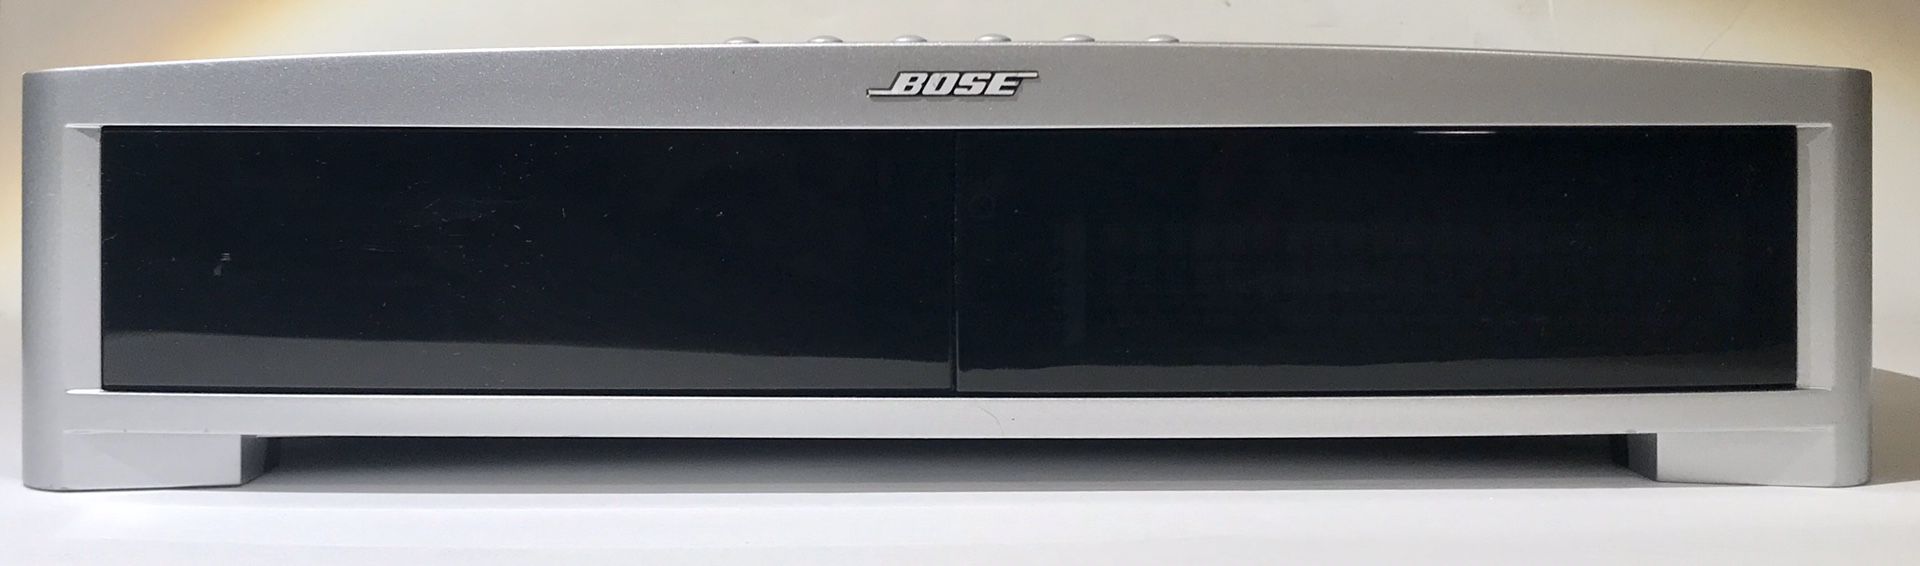 Bose Model AV3-2-1 III Media Center. Console Only